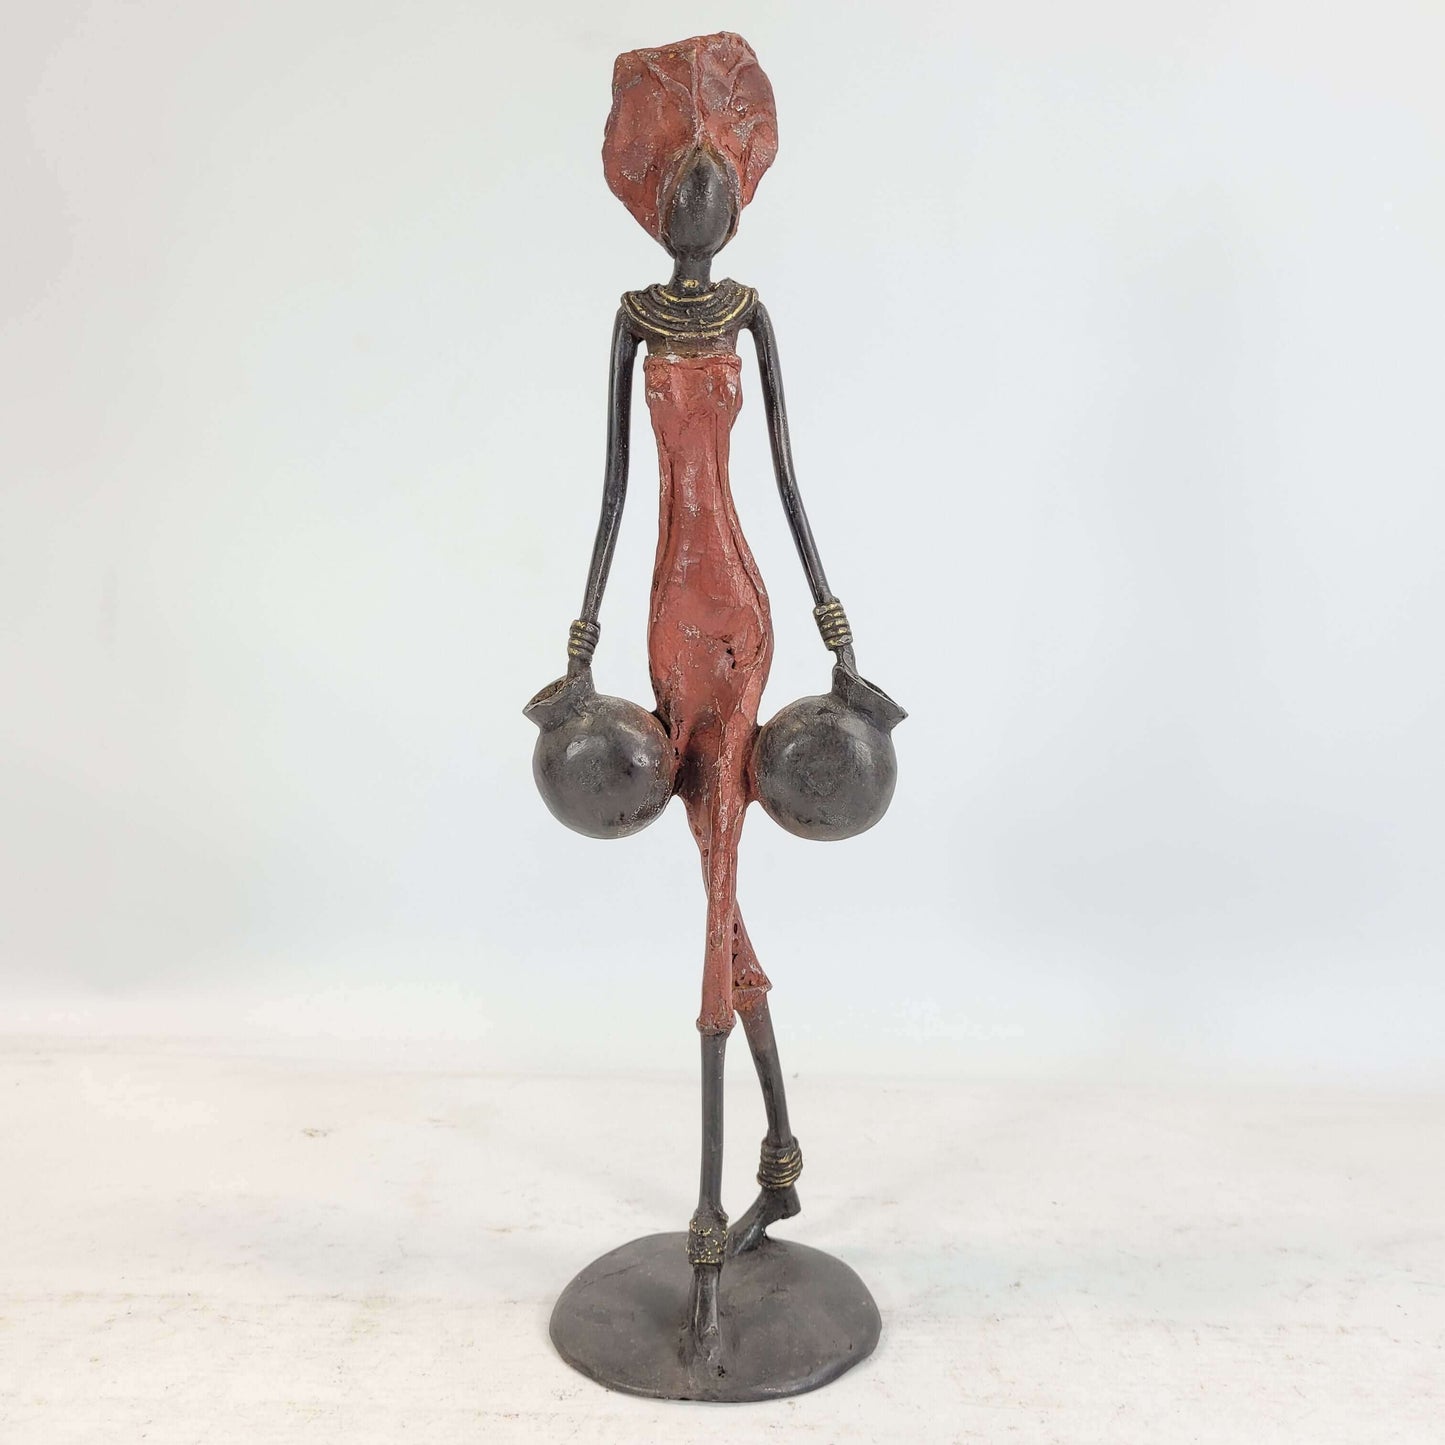 Bronze-Skulptur "Frau mit Amphoren" by Issouf | 35-38 cm